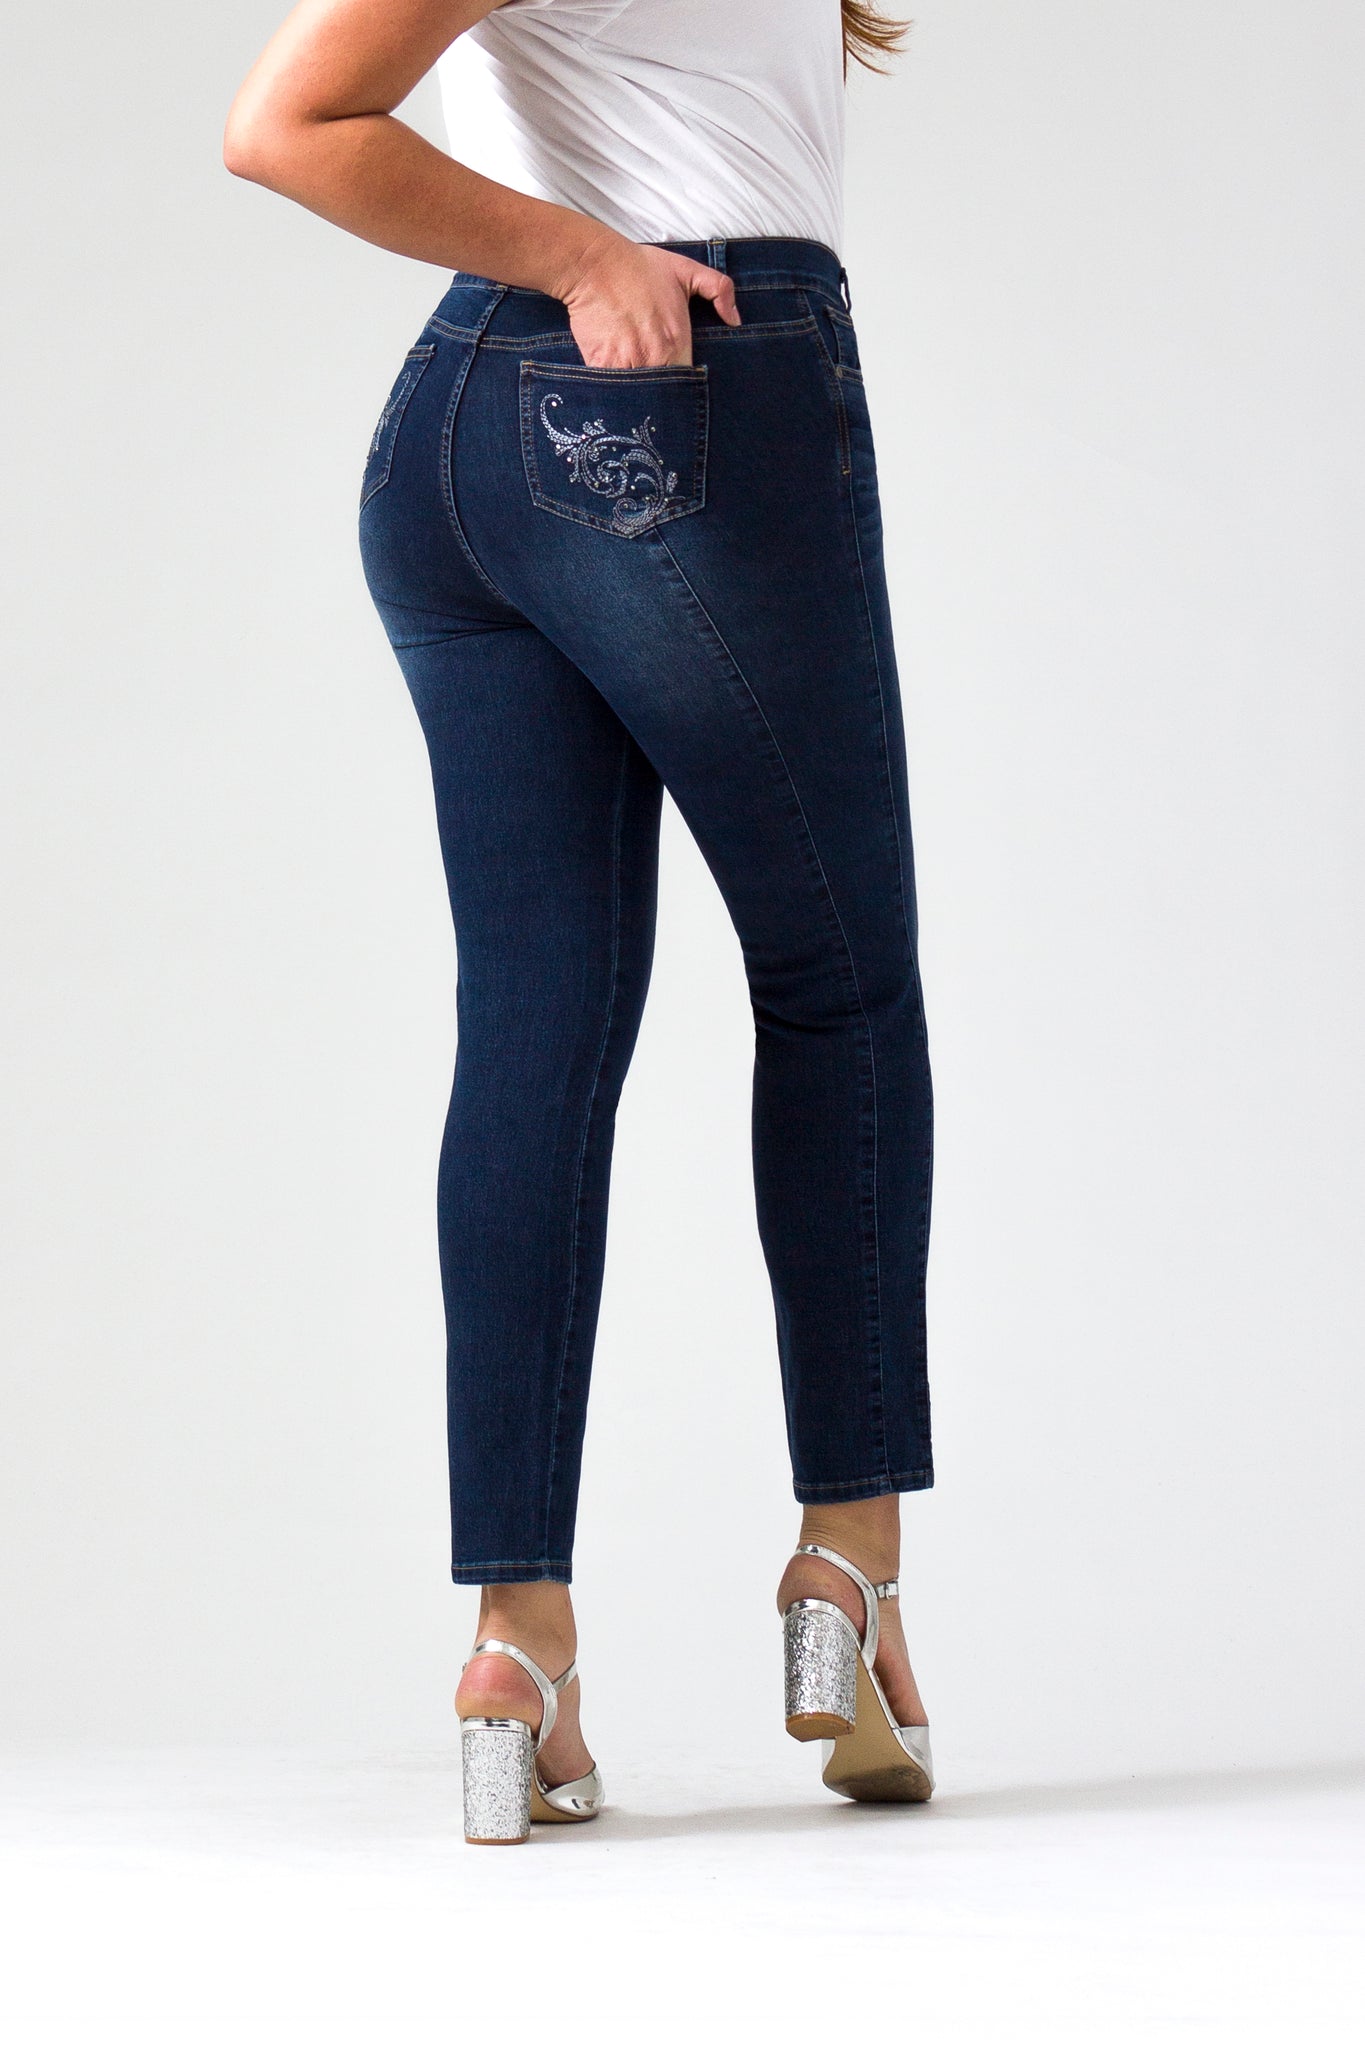 OHPOMP!® Curvy Cintura Alta Skinny Jeans Azul Medio OPE1348